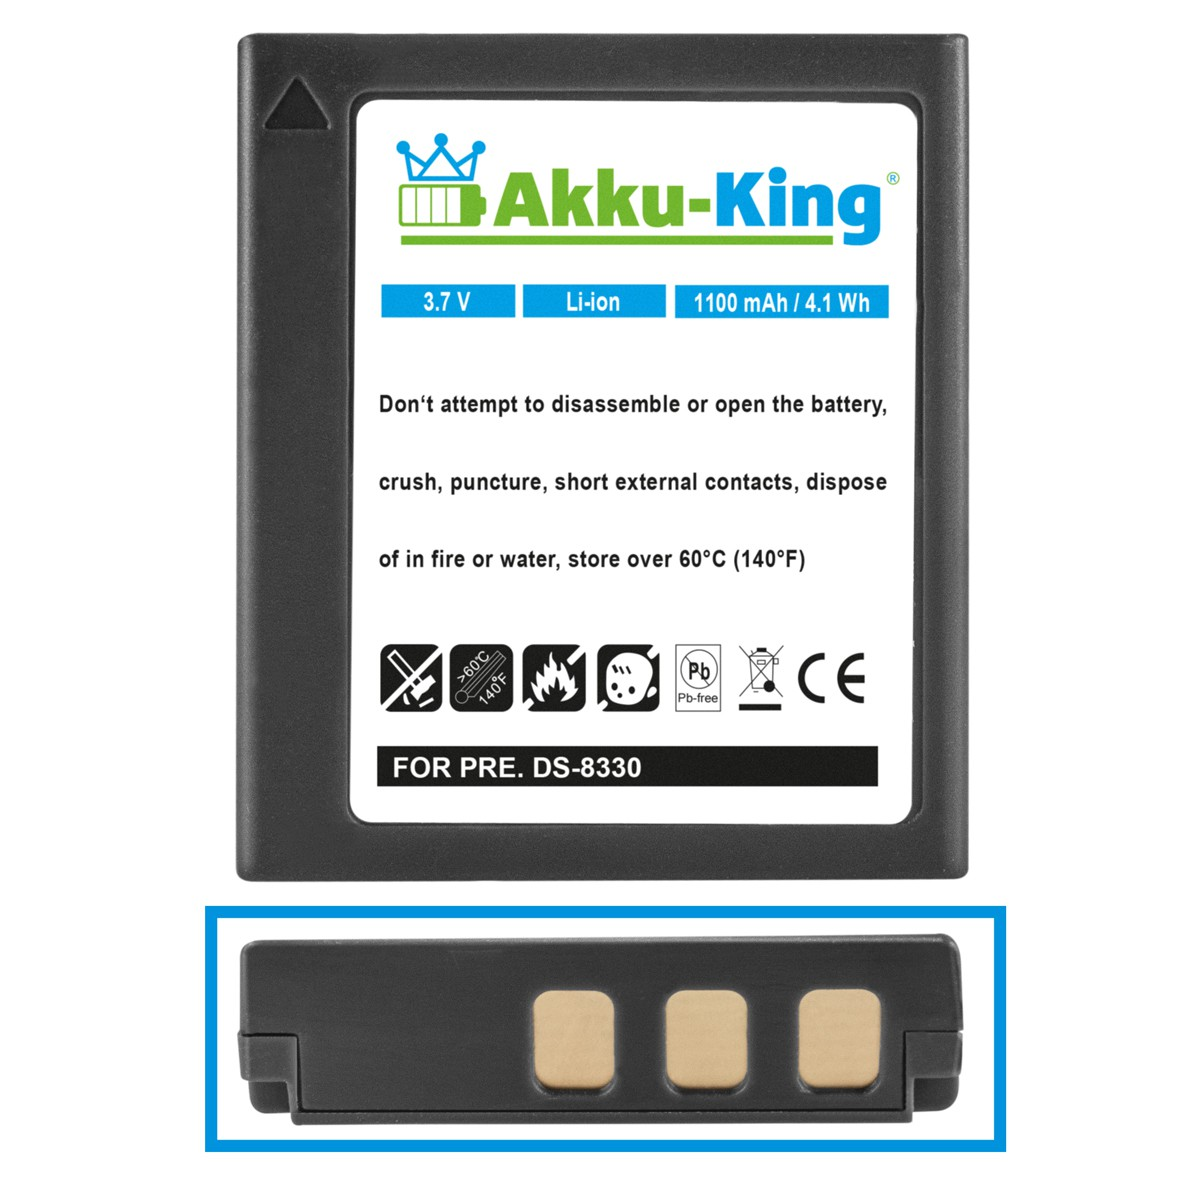 mit DC-8300 Li-Ion Akku kompatibel 1100mAh AKKU-KING Medion Kamera-Akku, Volt, 3.7